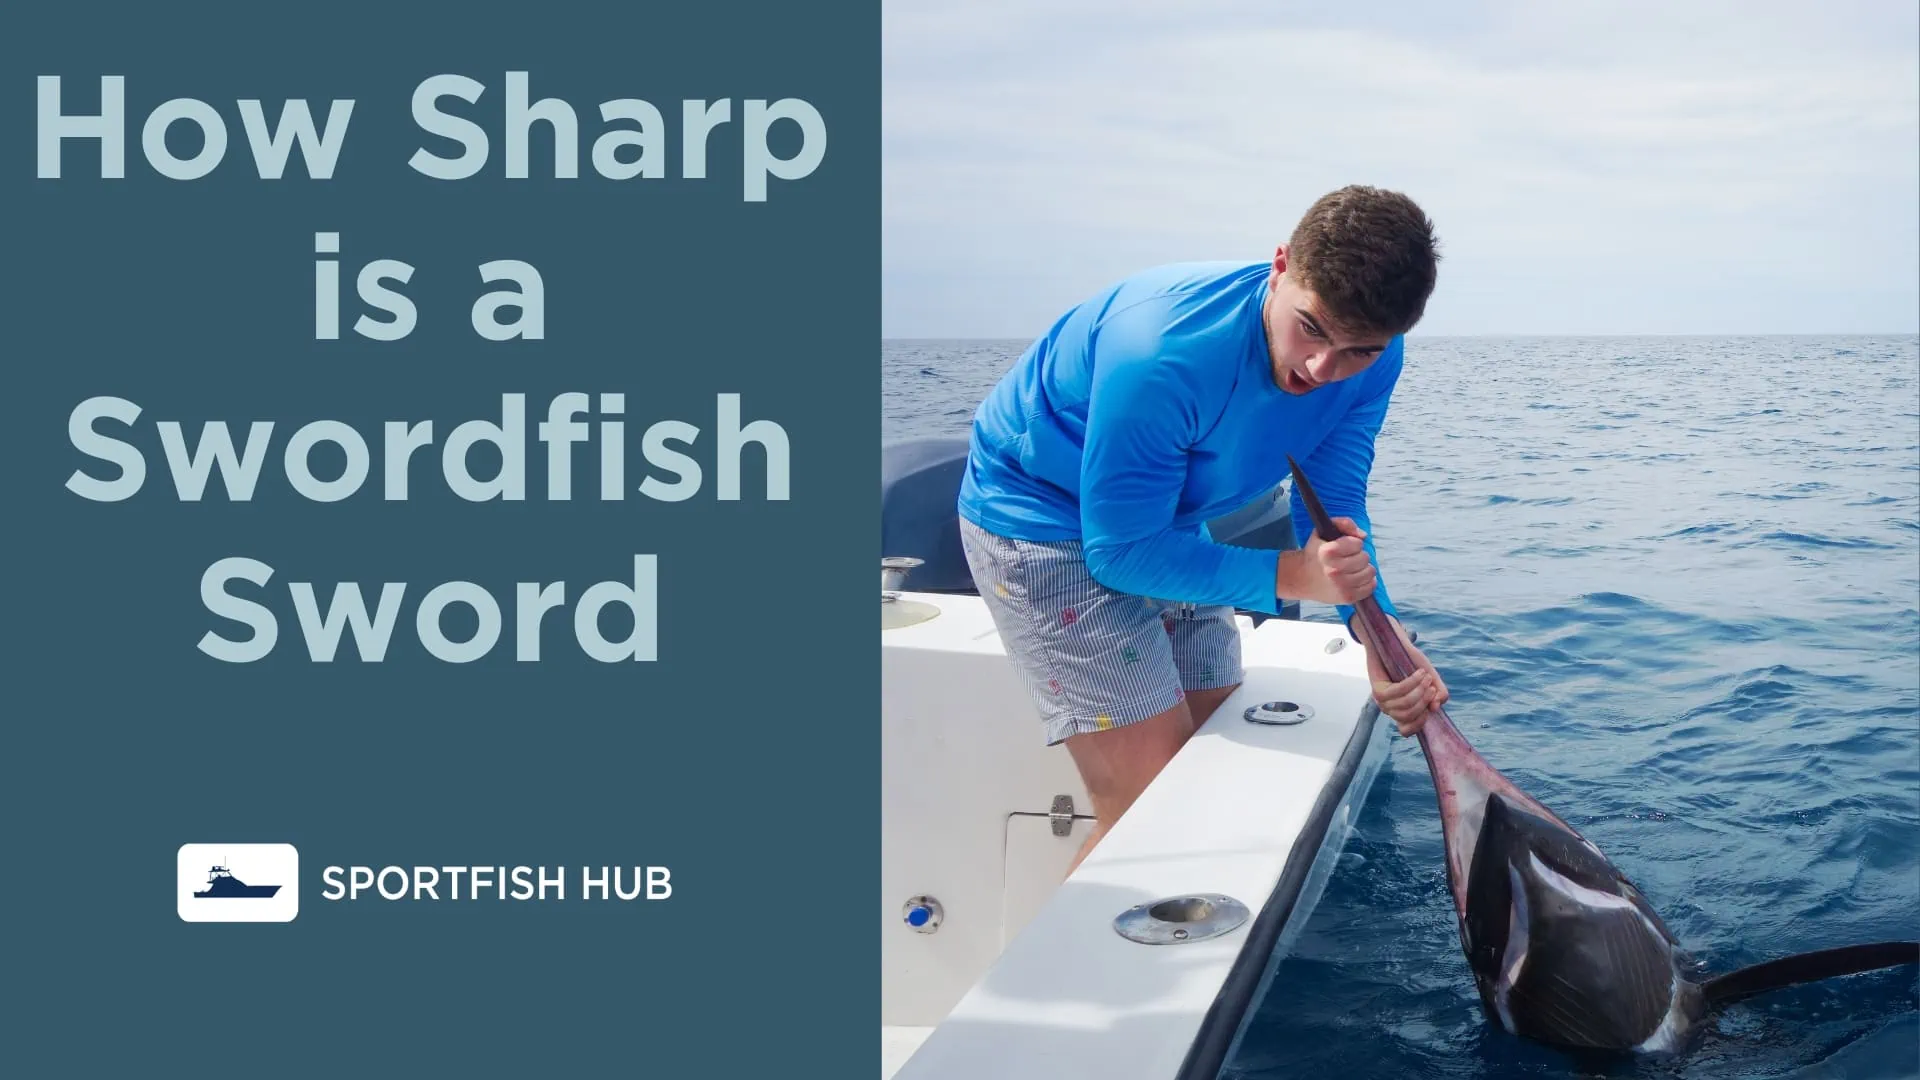 How Sharp is a Swordfish Sword